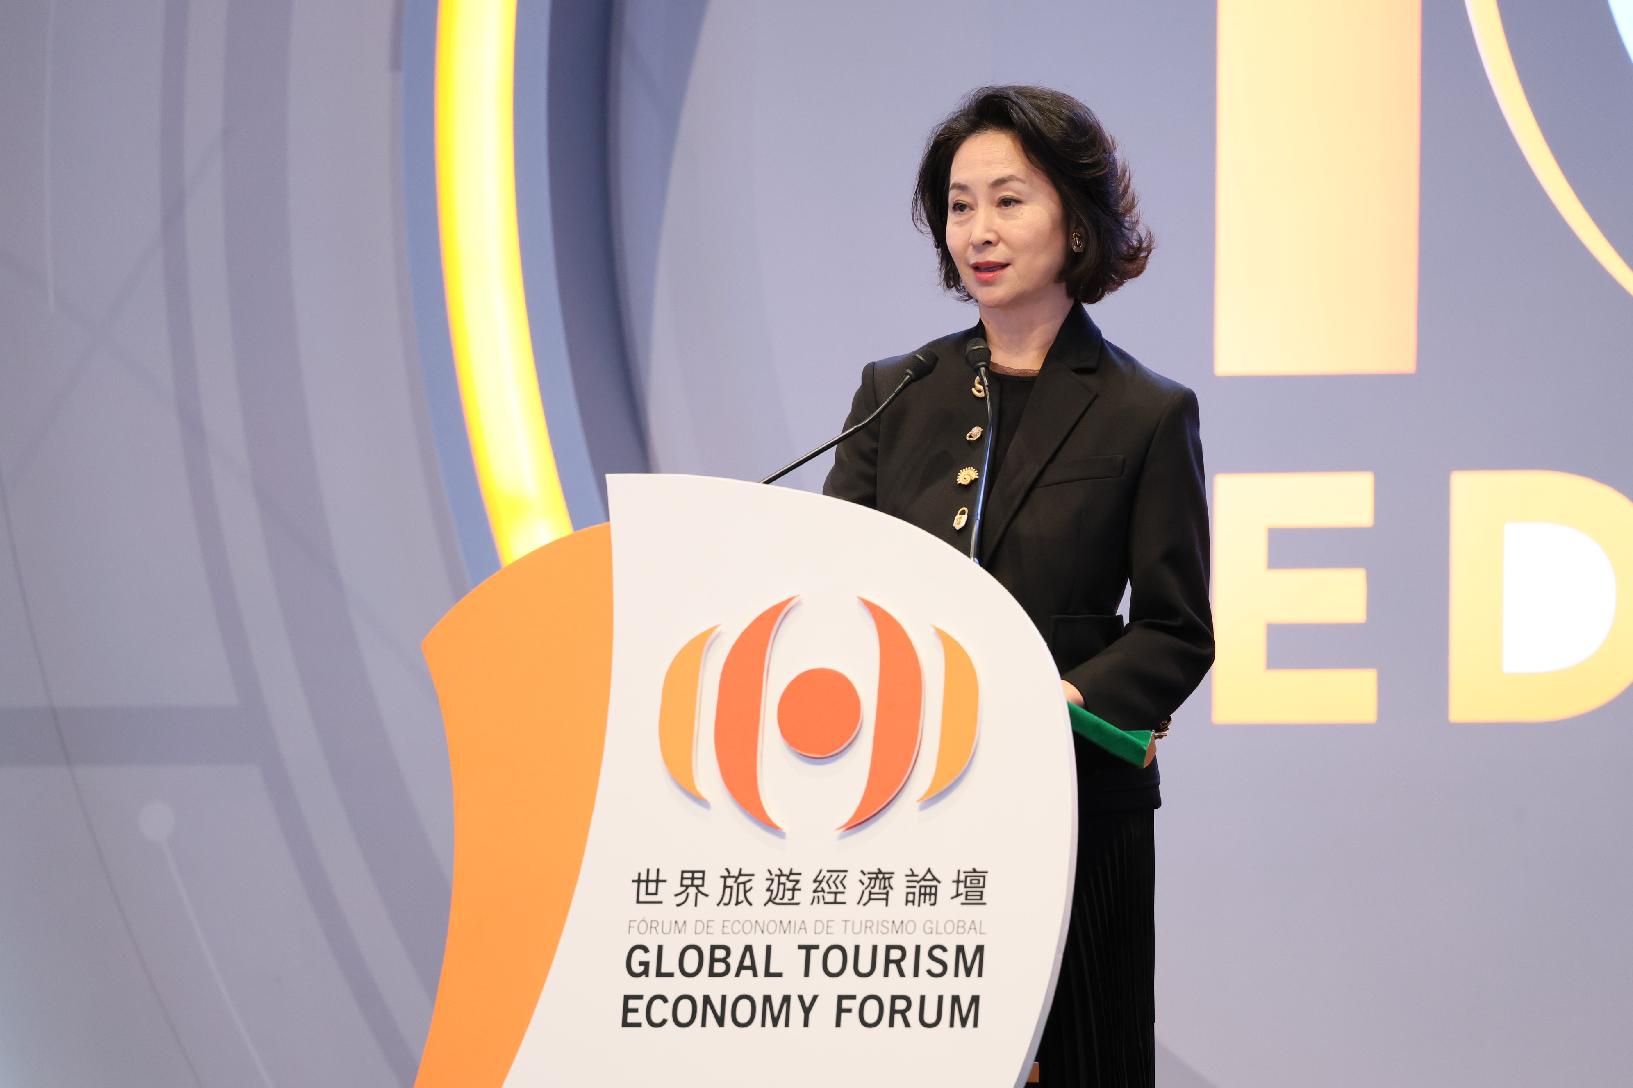 10.º Fórum de Economia de Turismo Global • Macau 2023 arranca oficialmente – Debates aprofundados sobre libertar o potencial do turismo (Nota de imprensa do Gabinete do Secretário para a Economia e Finanças)